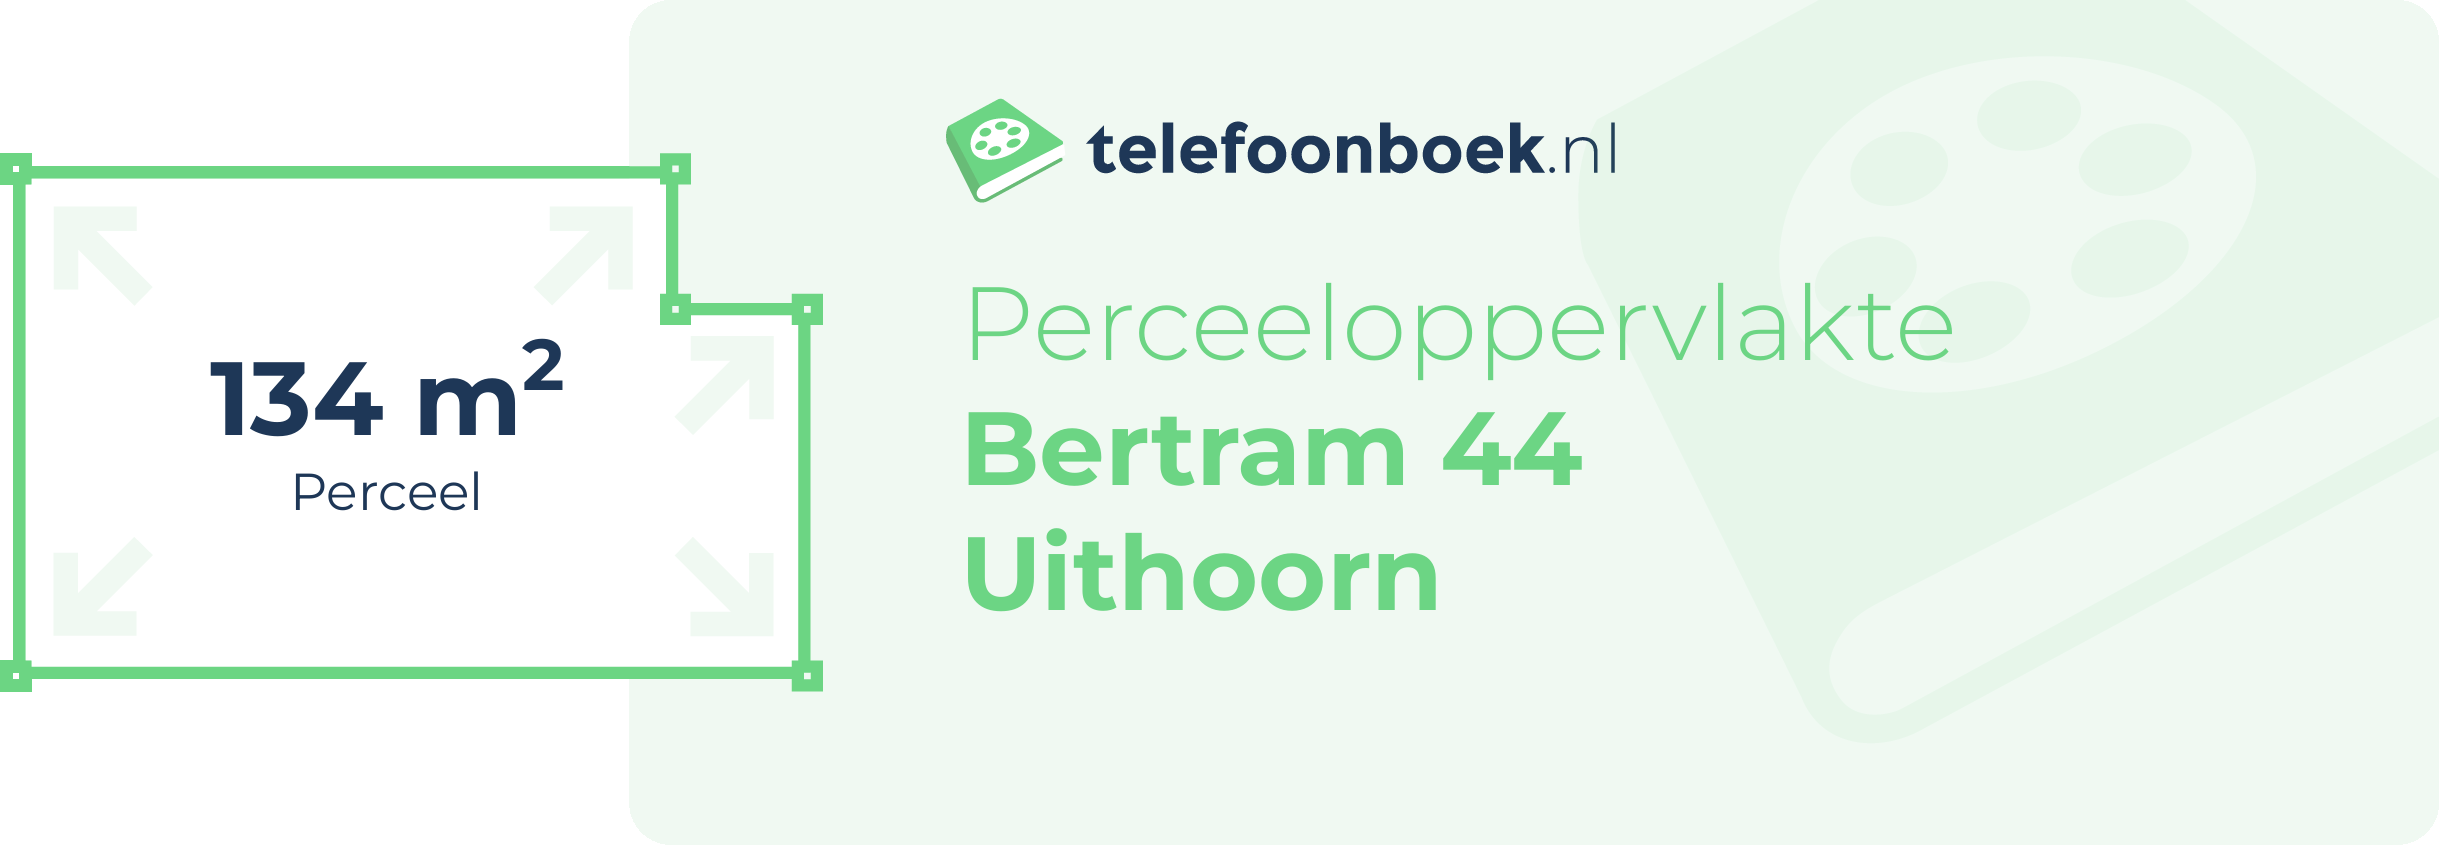 Perceeloppervlakte Bertram 44 Uithoorn